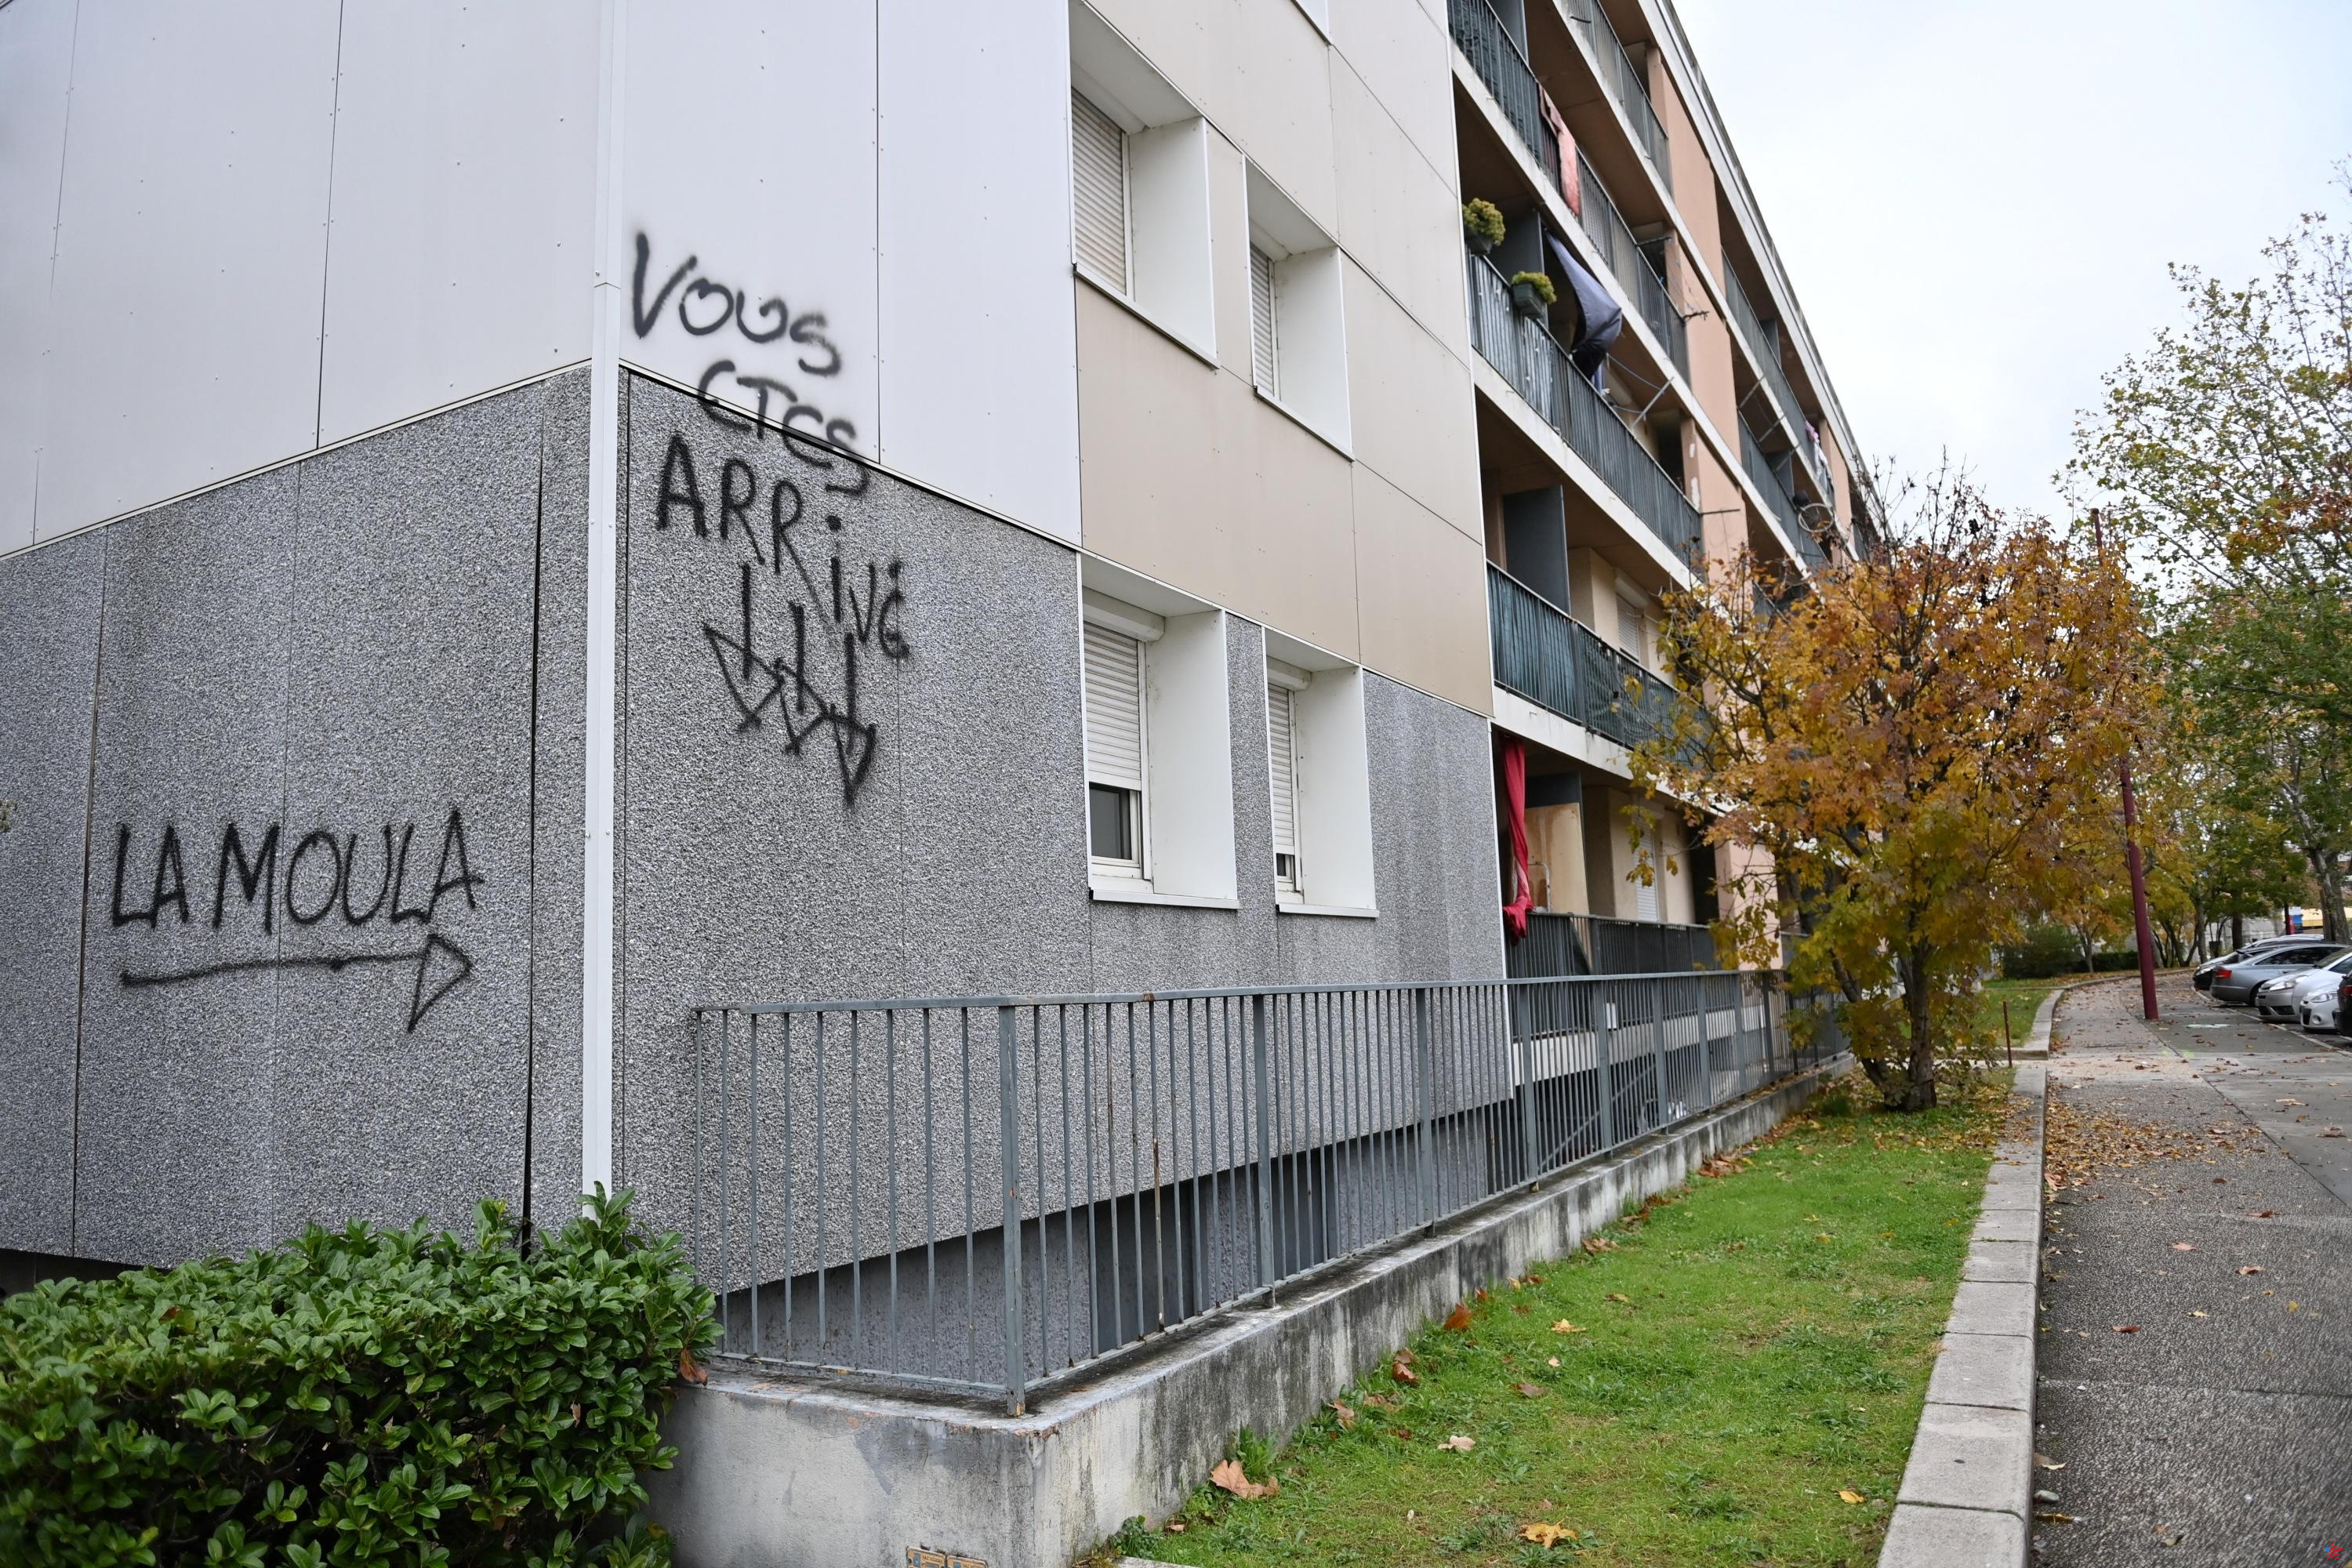 Marcha por la identidad en Romans-sur-Isère: se espera el juicio de siete activistas de ultraderecha este miércoles